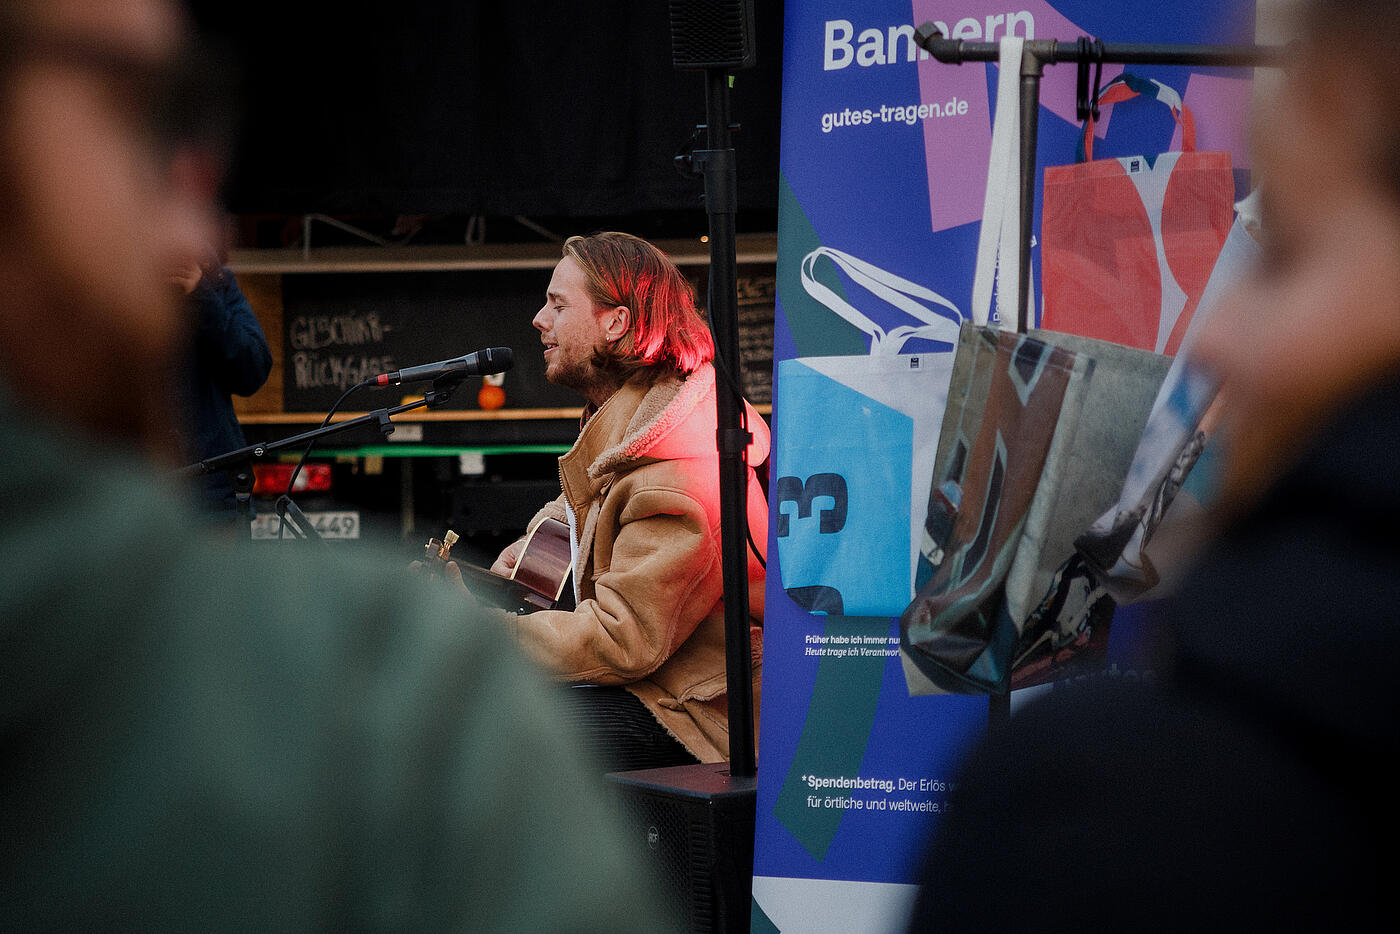 Ein Musiker in brauner Lederjacke sitzt mit Gitarre vor einem RollUp zu den Bannerbeuteln von visuellverstehen.